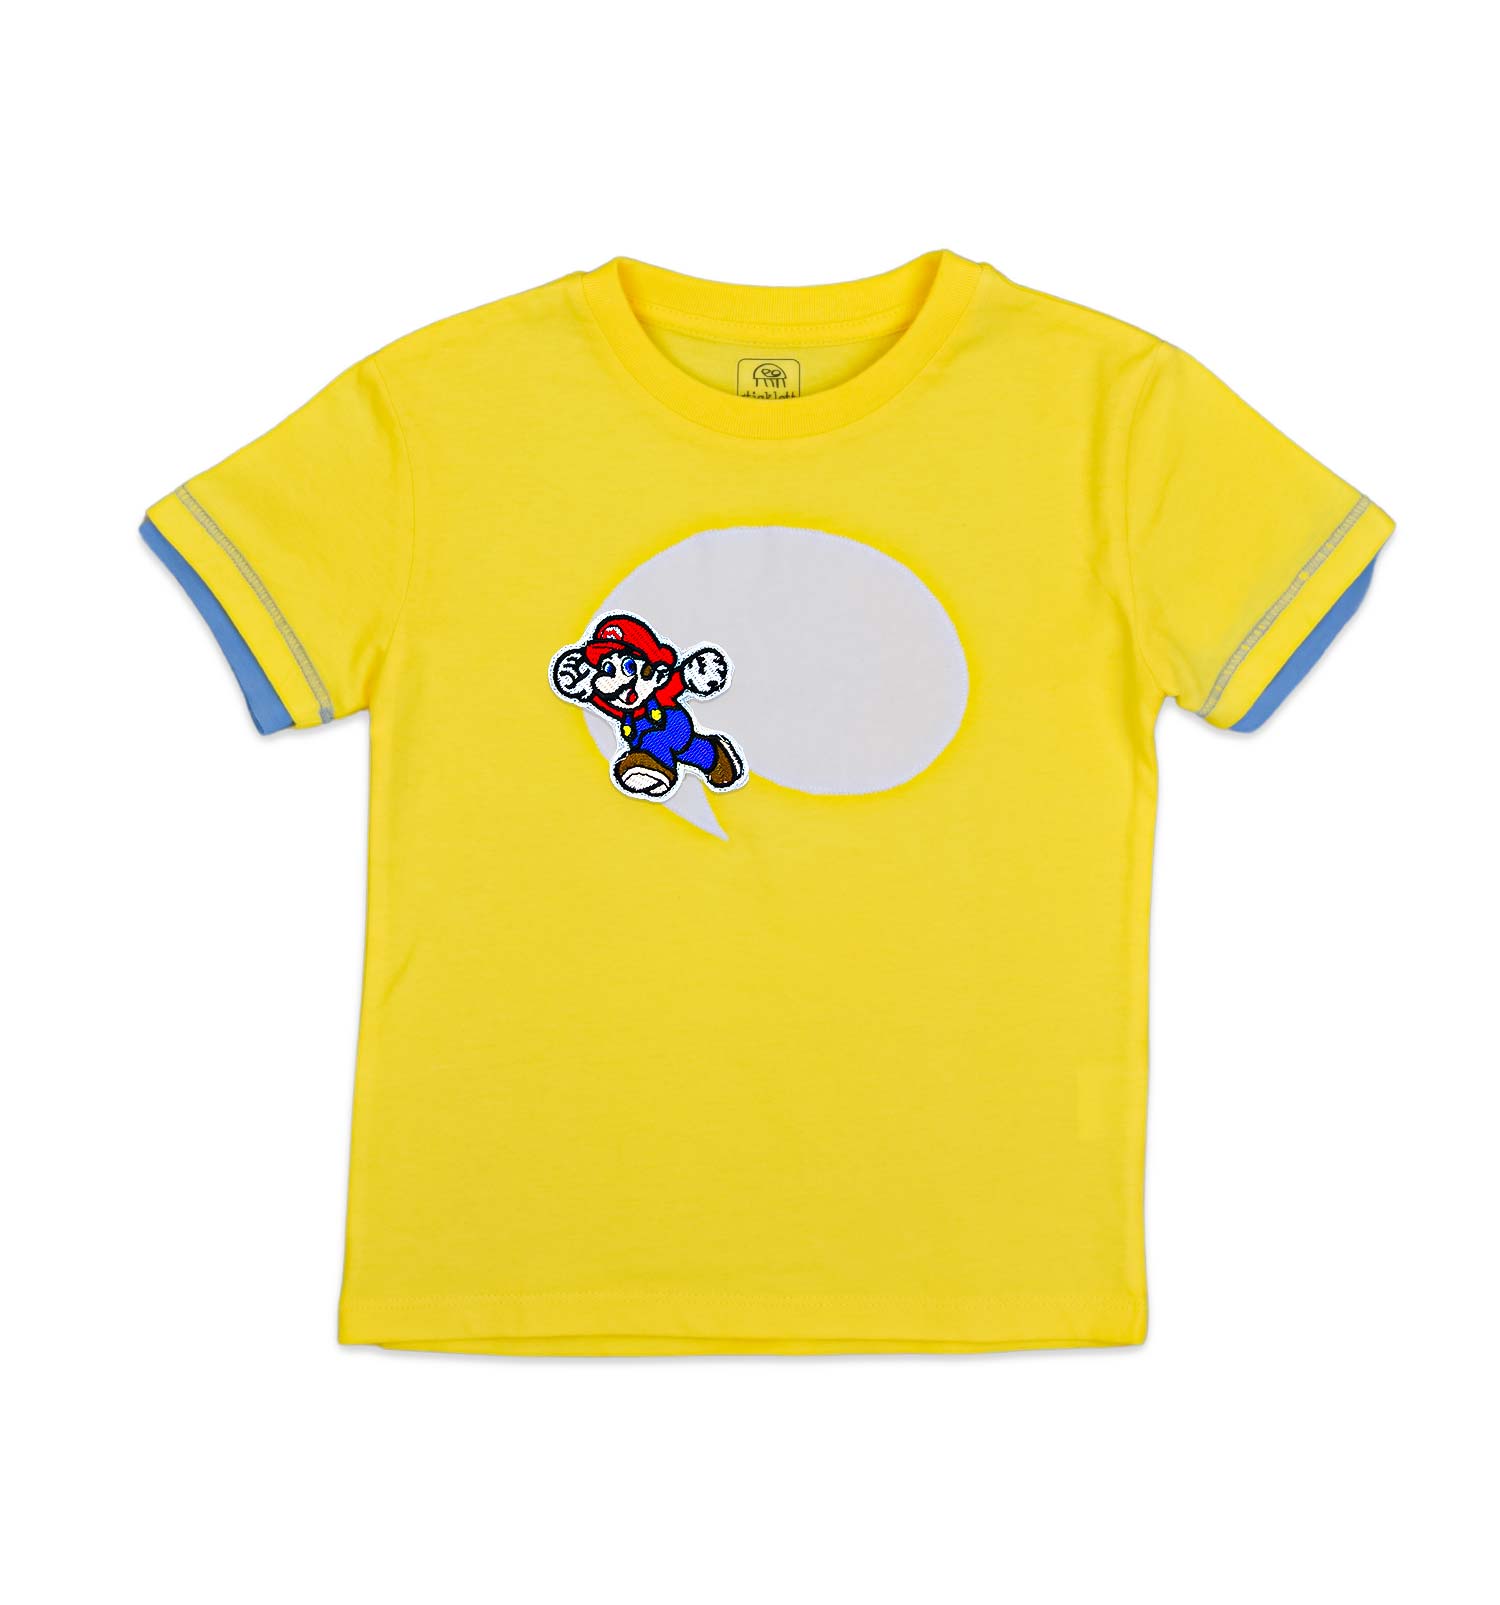 Buben T-Shirt mit Sprechblase in gelb | sticklett Online Store.